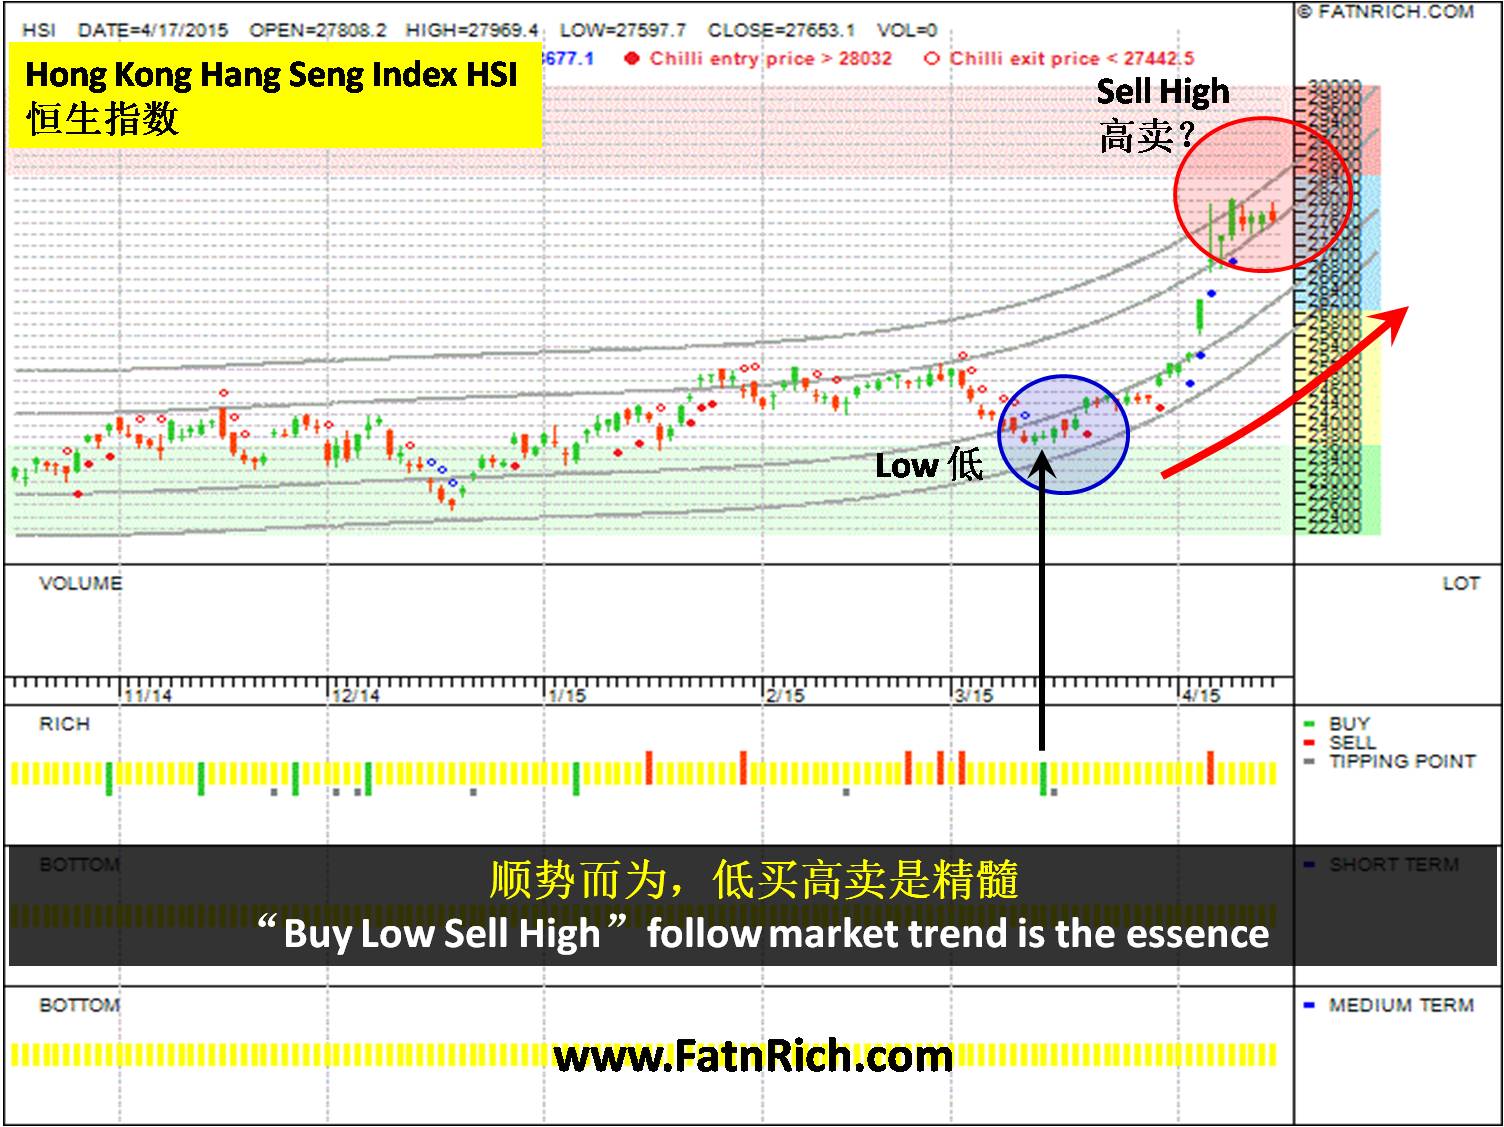 Hong Kong Hang Seng Index (HSI)